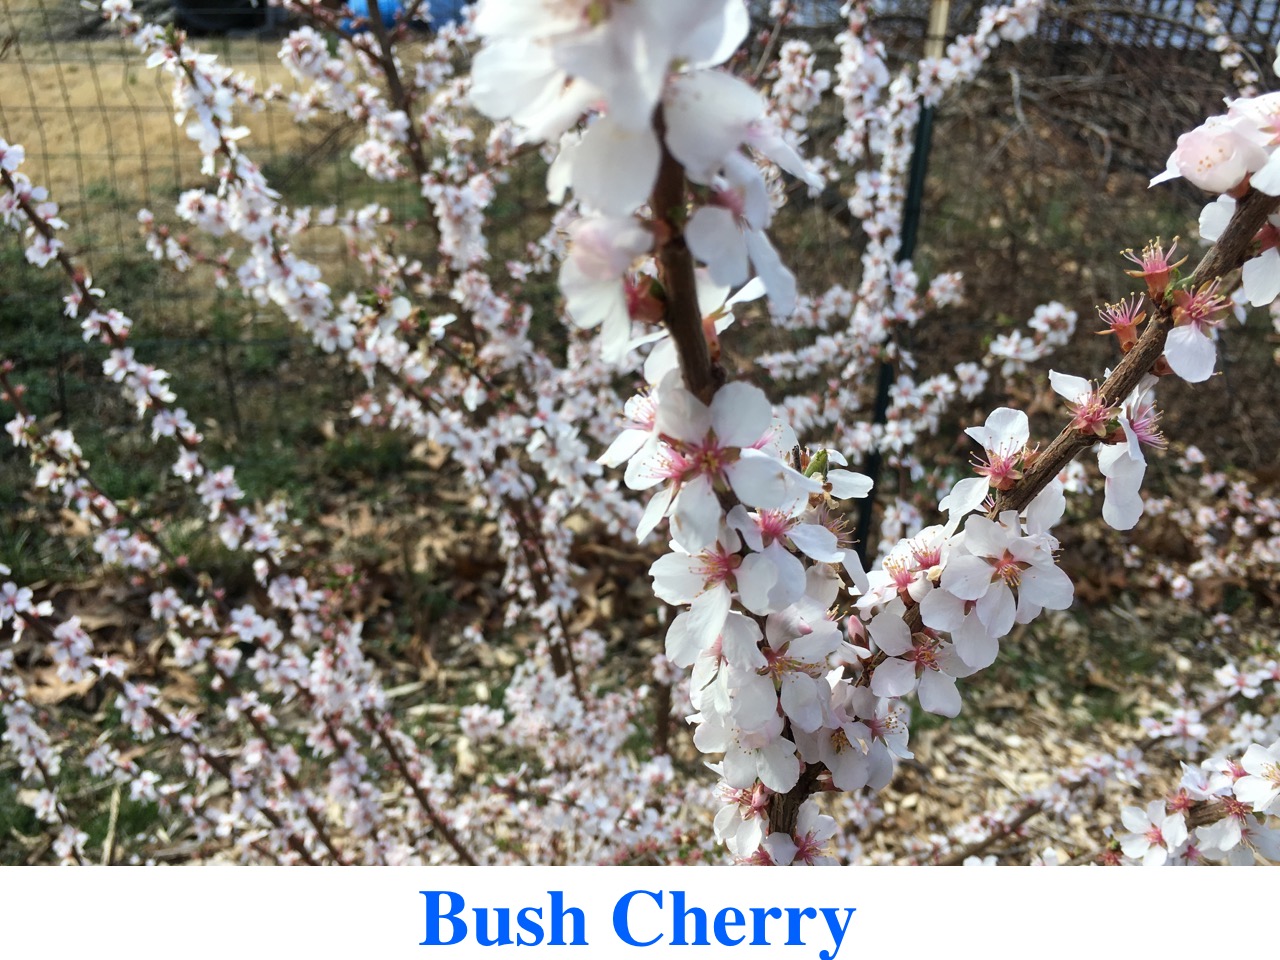 Bush Cherry for Sale